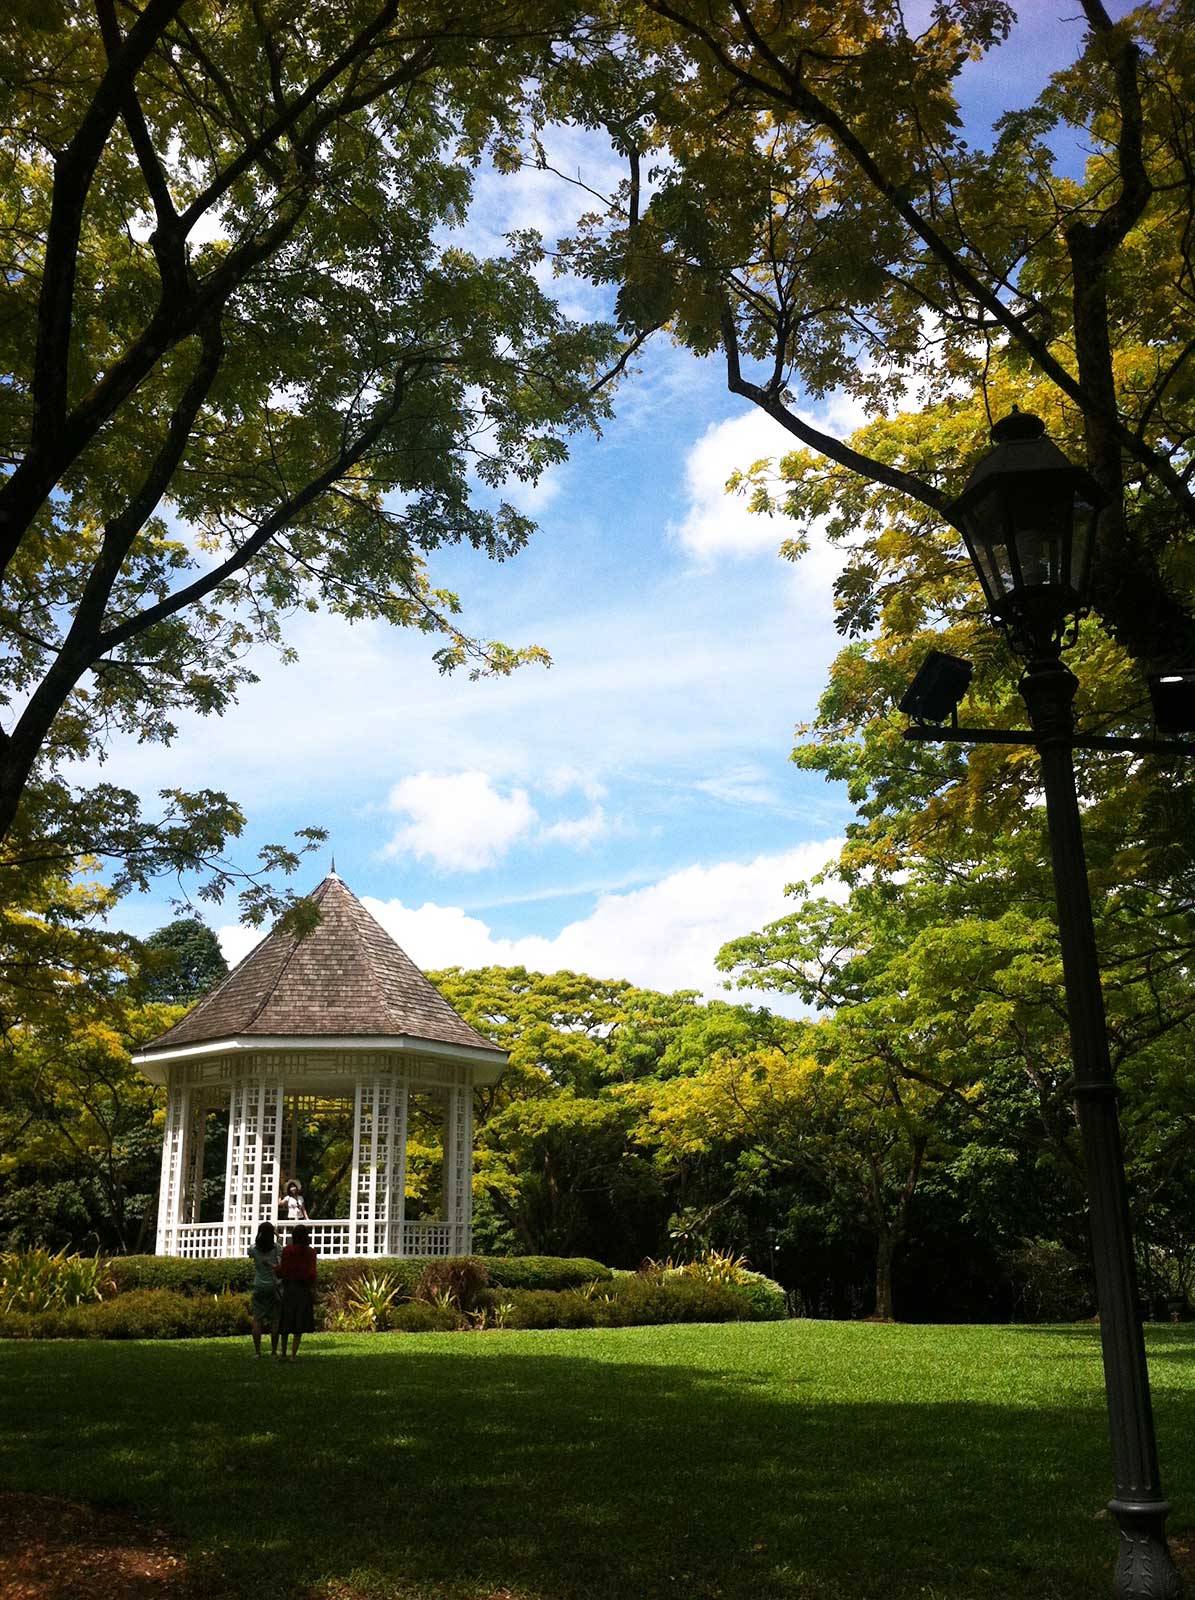 Sehenswürdigkeiten in Singapur; Botanischer Garten Singapur